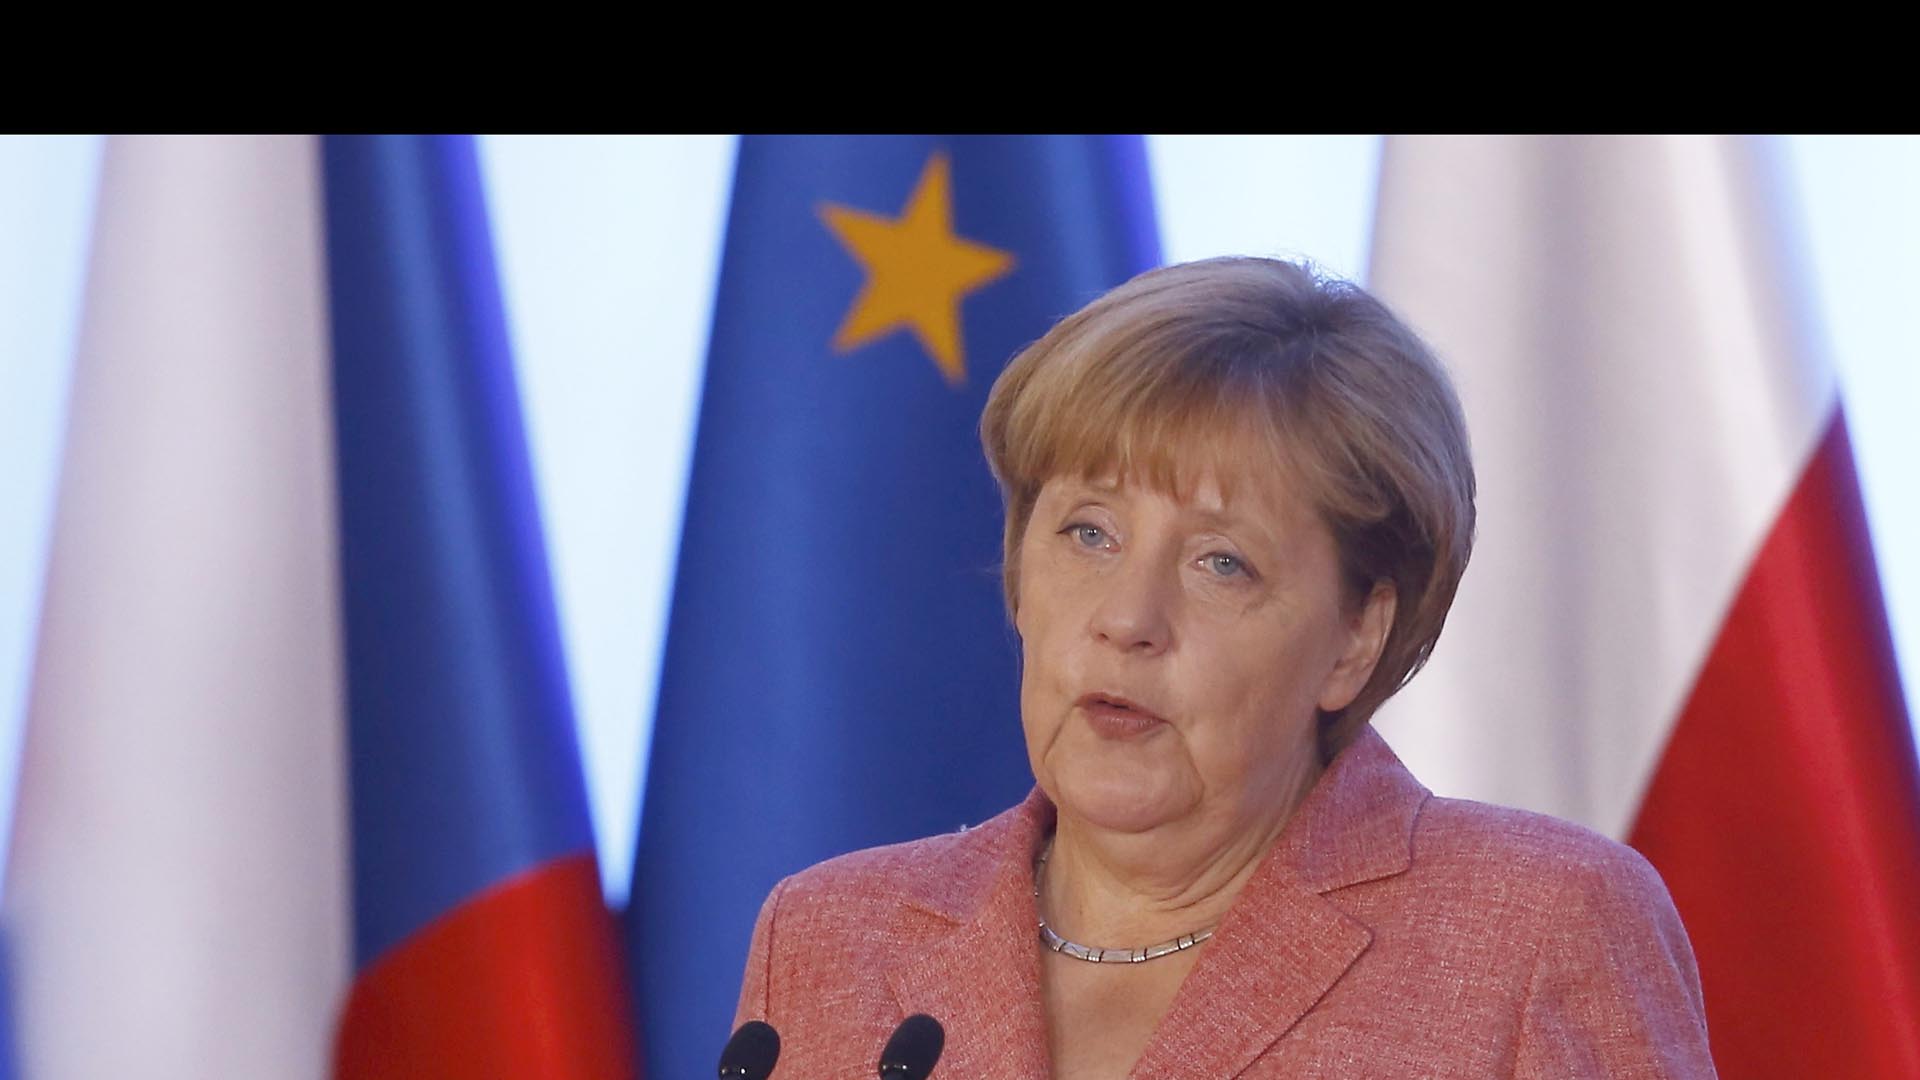 La canciller alemana dijo que los 27 países deben mantenerse unidos a pesar de sus diferencias